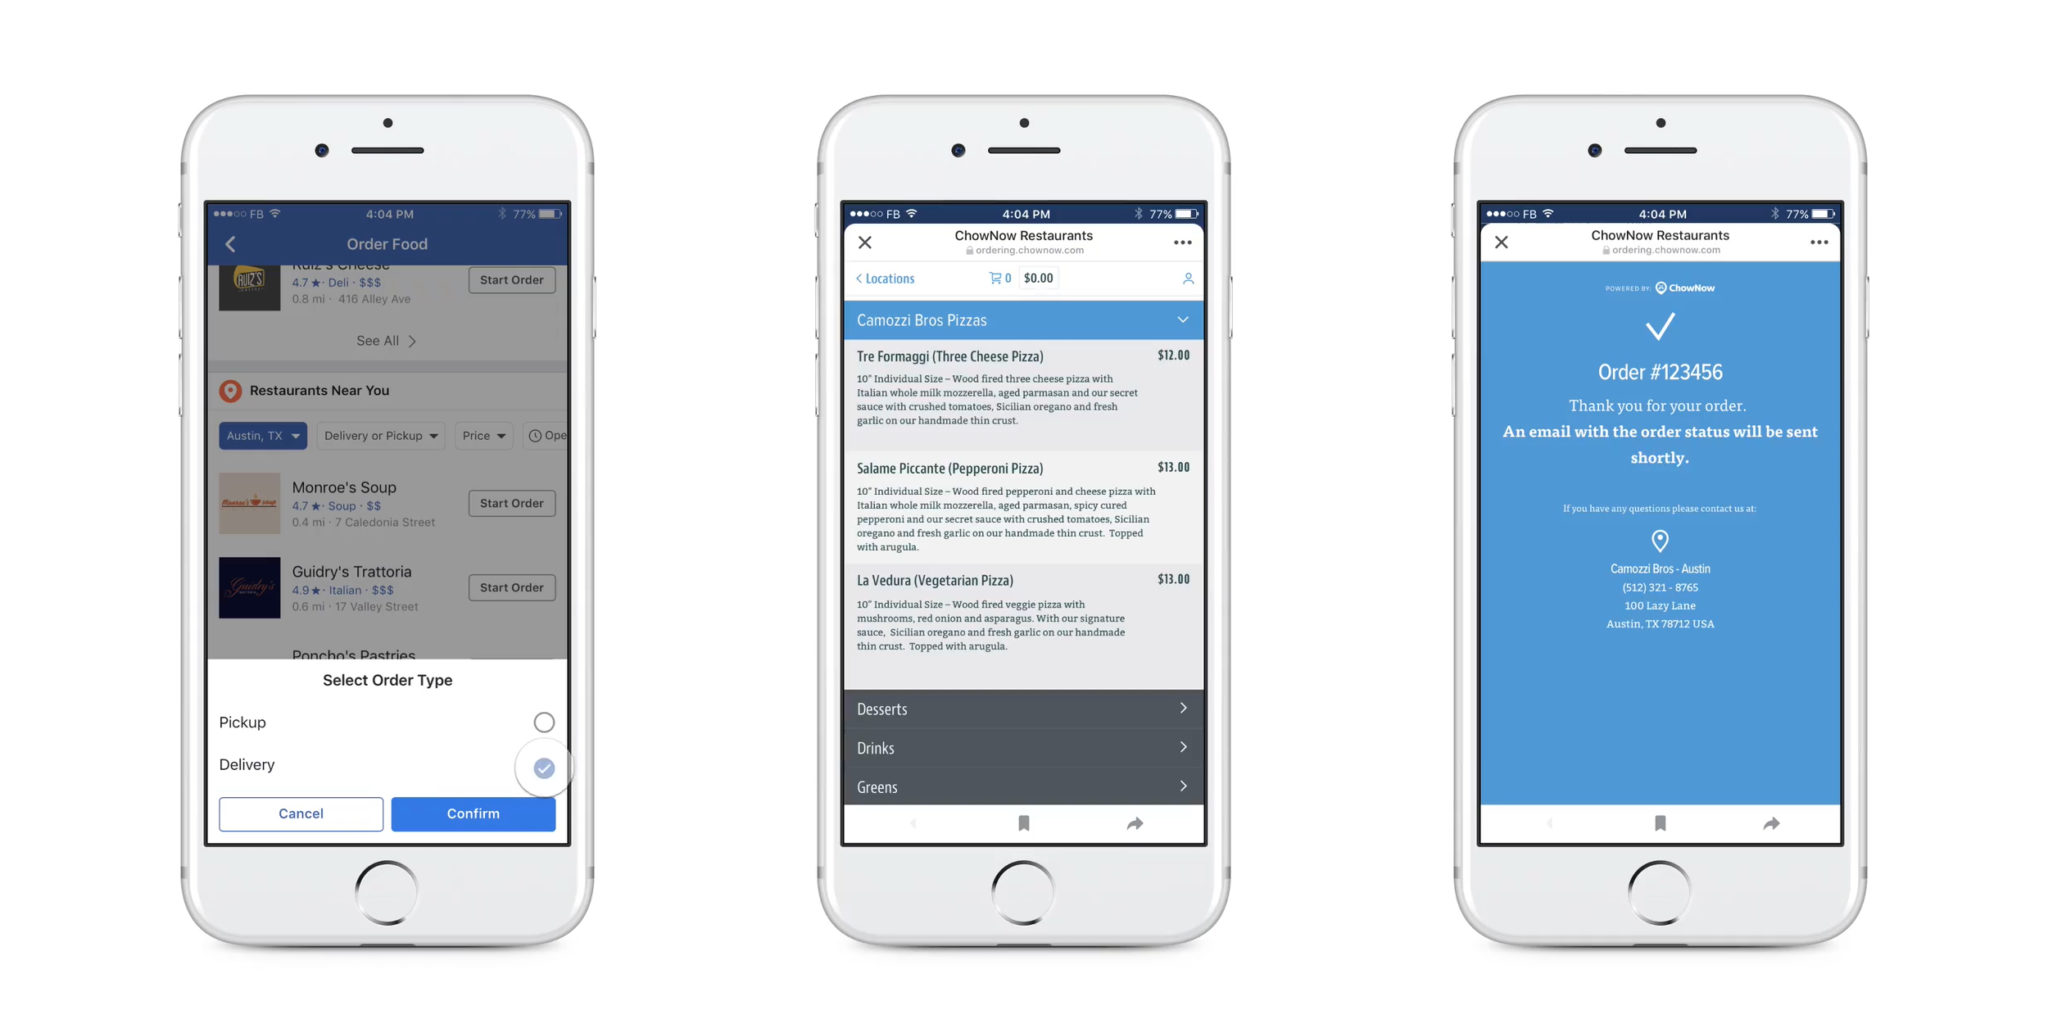 خدمة جديدة من الفيس بوك يتيح للمستخدمين طلب الطعام عبر تطبيقها أو موقعها مدونة نظام أون لاين التقنية